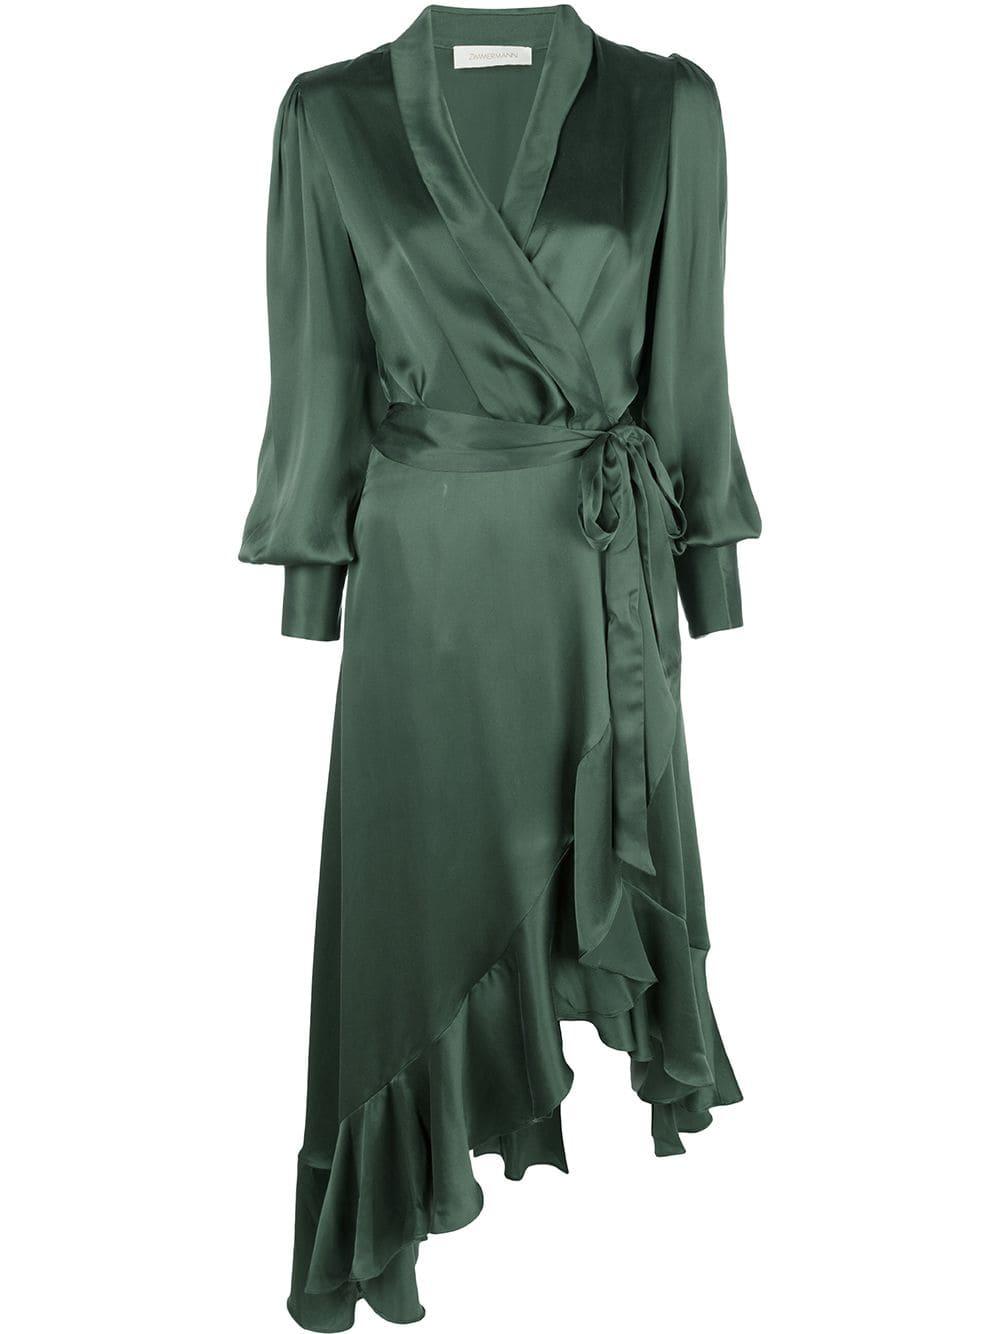 Zimmermann Silk Ruffled Wrap Dress in Green - Lyst